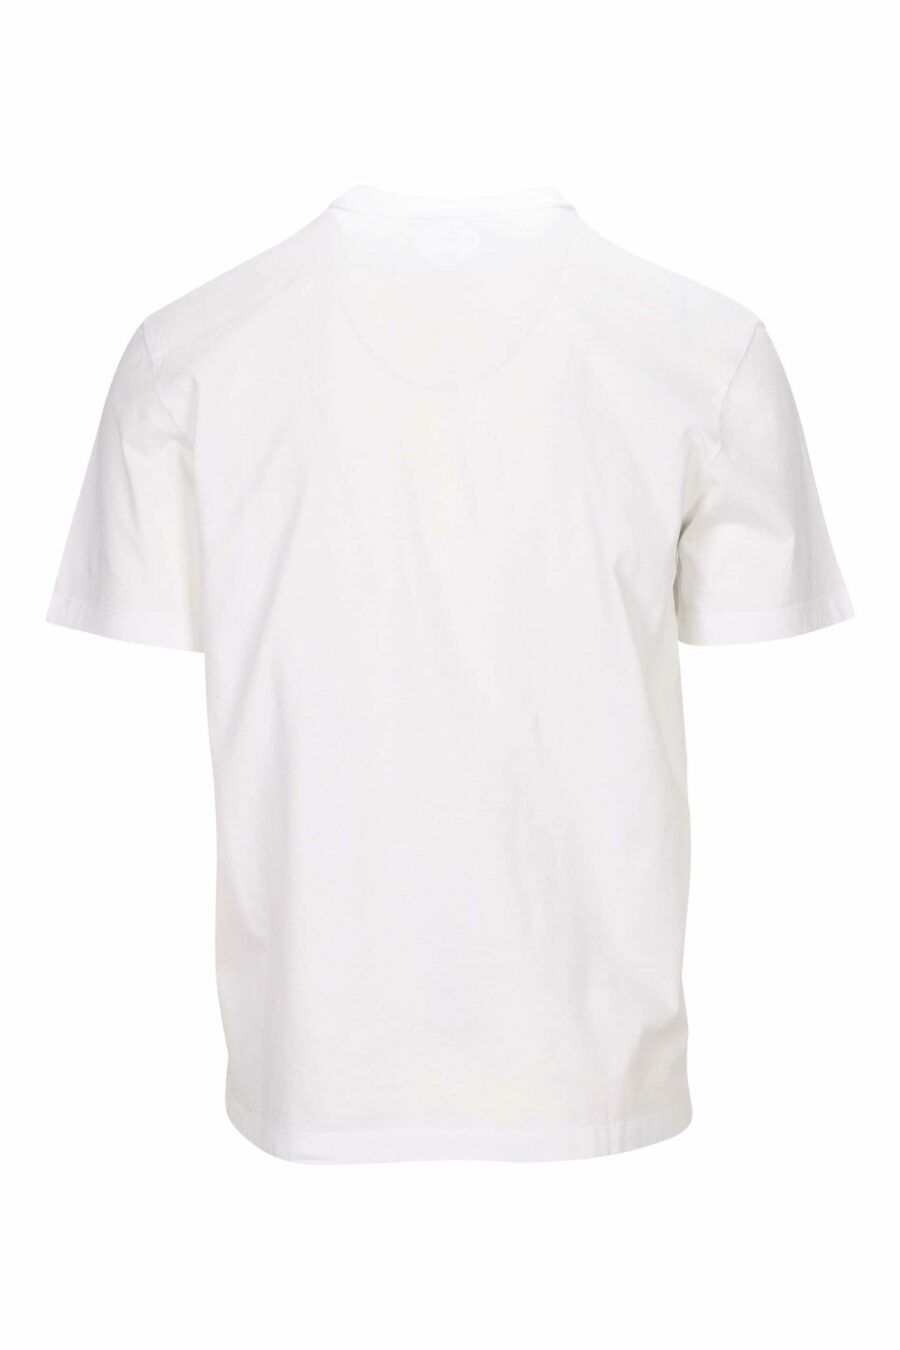 Camiseta blanca con maxilogo hoja monocromático en relieve - 8054148265830 1 scaled